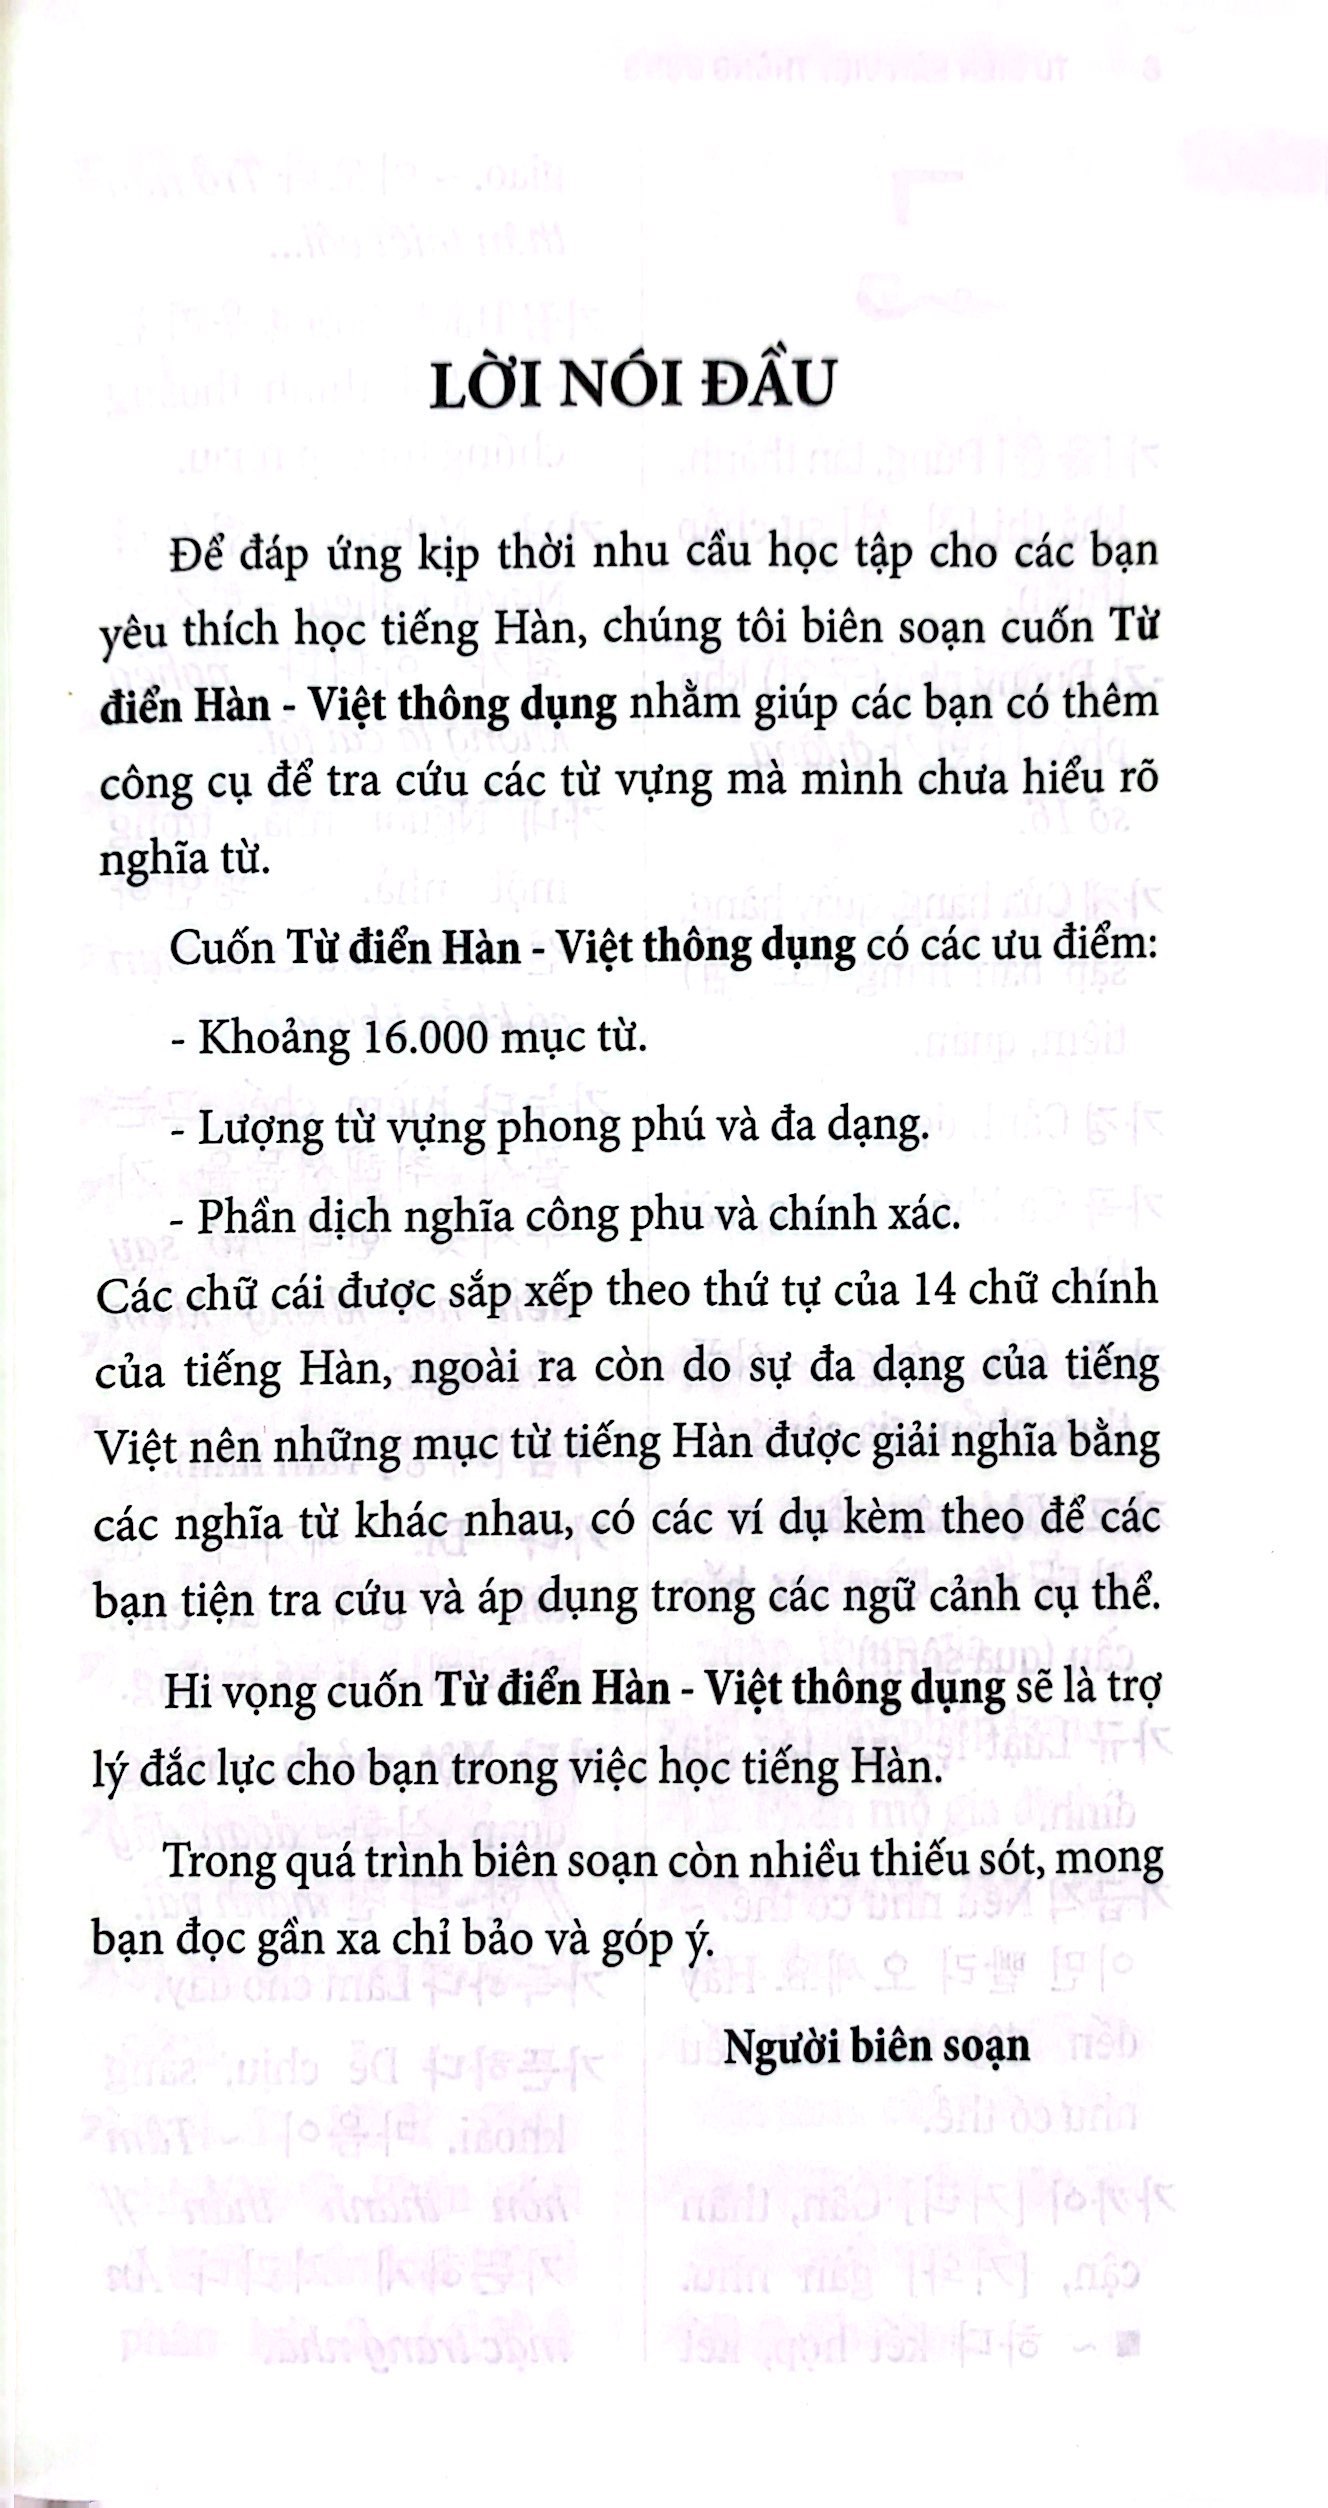 Từ Điển Hàn - Việt Thông Dụng PDF